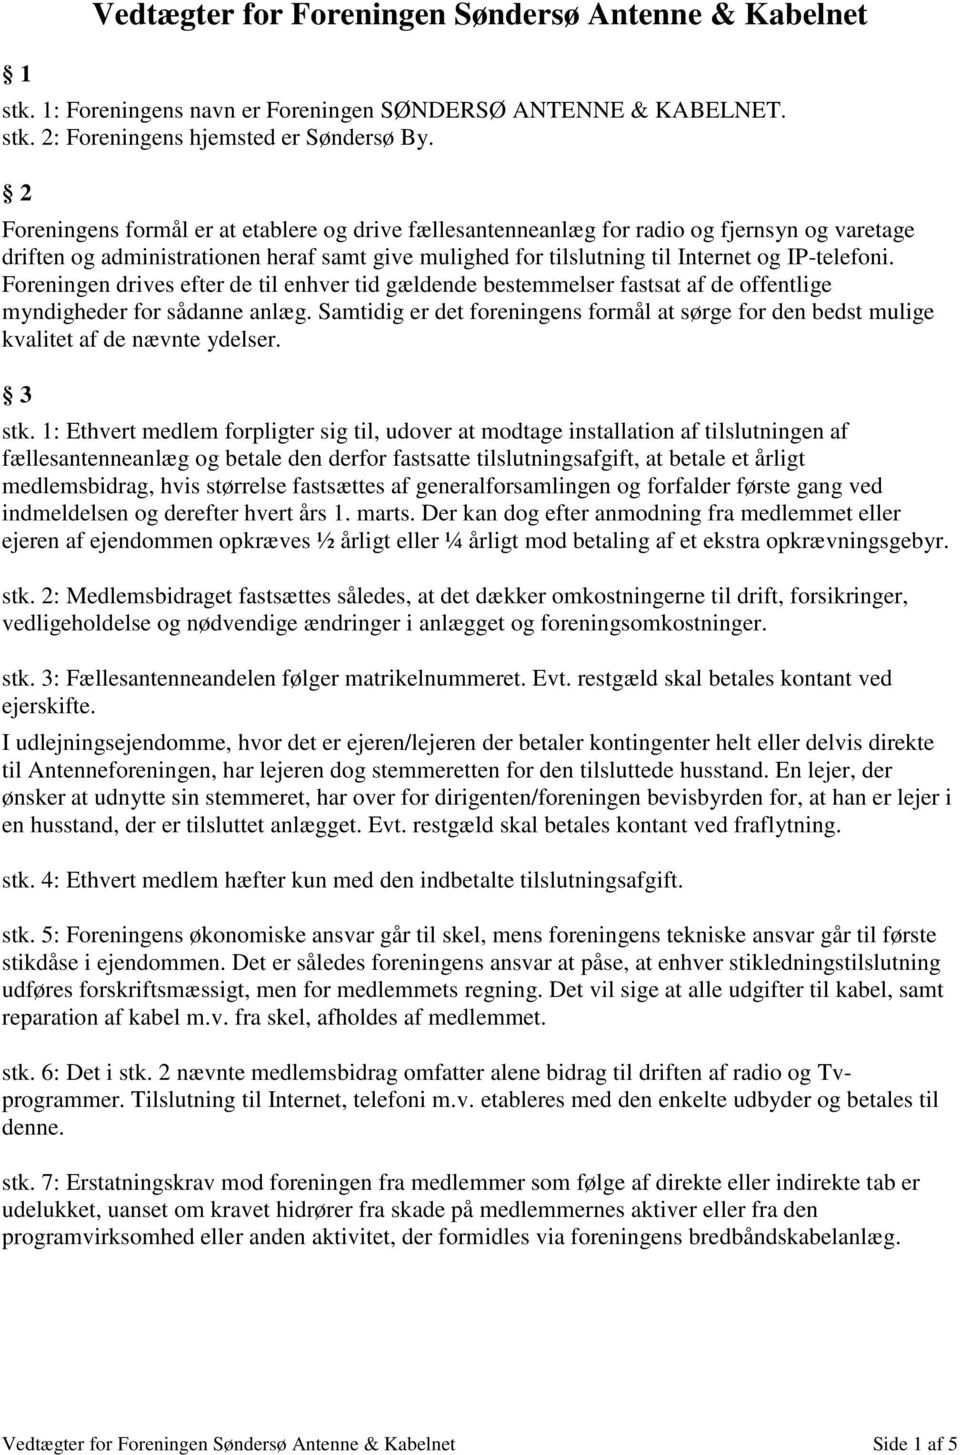 Vedtægter for Foreningen Søndersø Antenne & Kabelnet - PDF Free Download